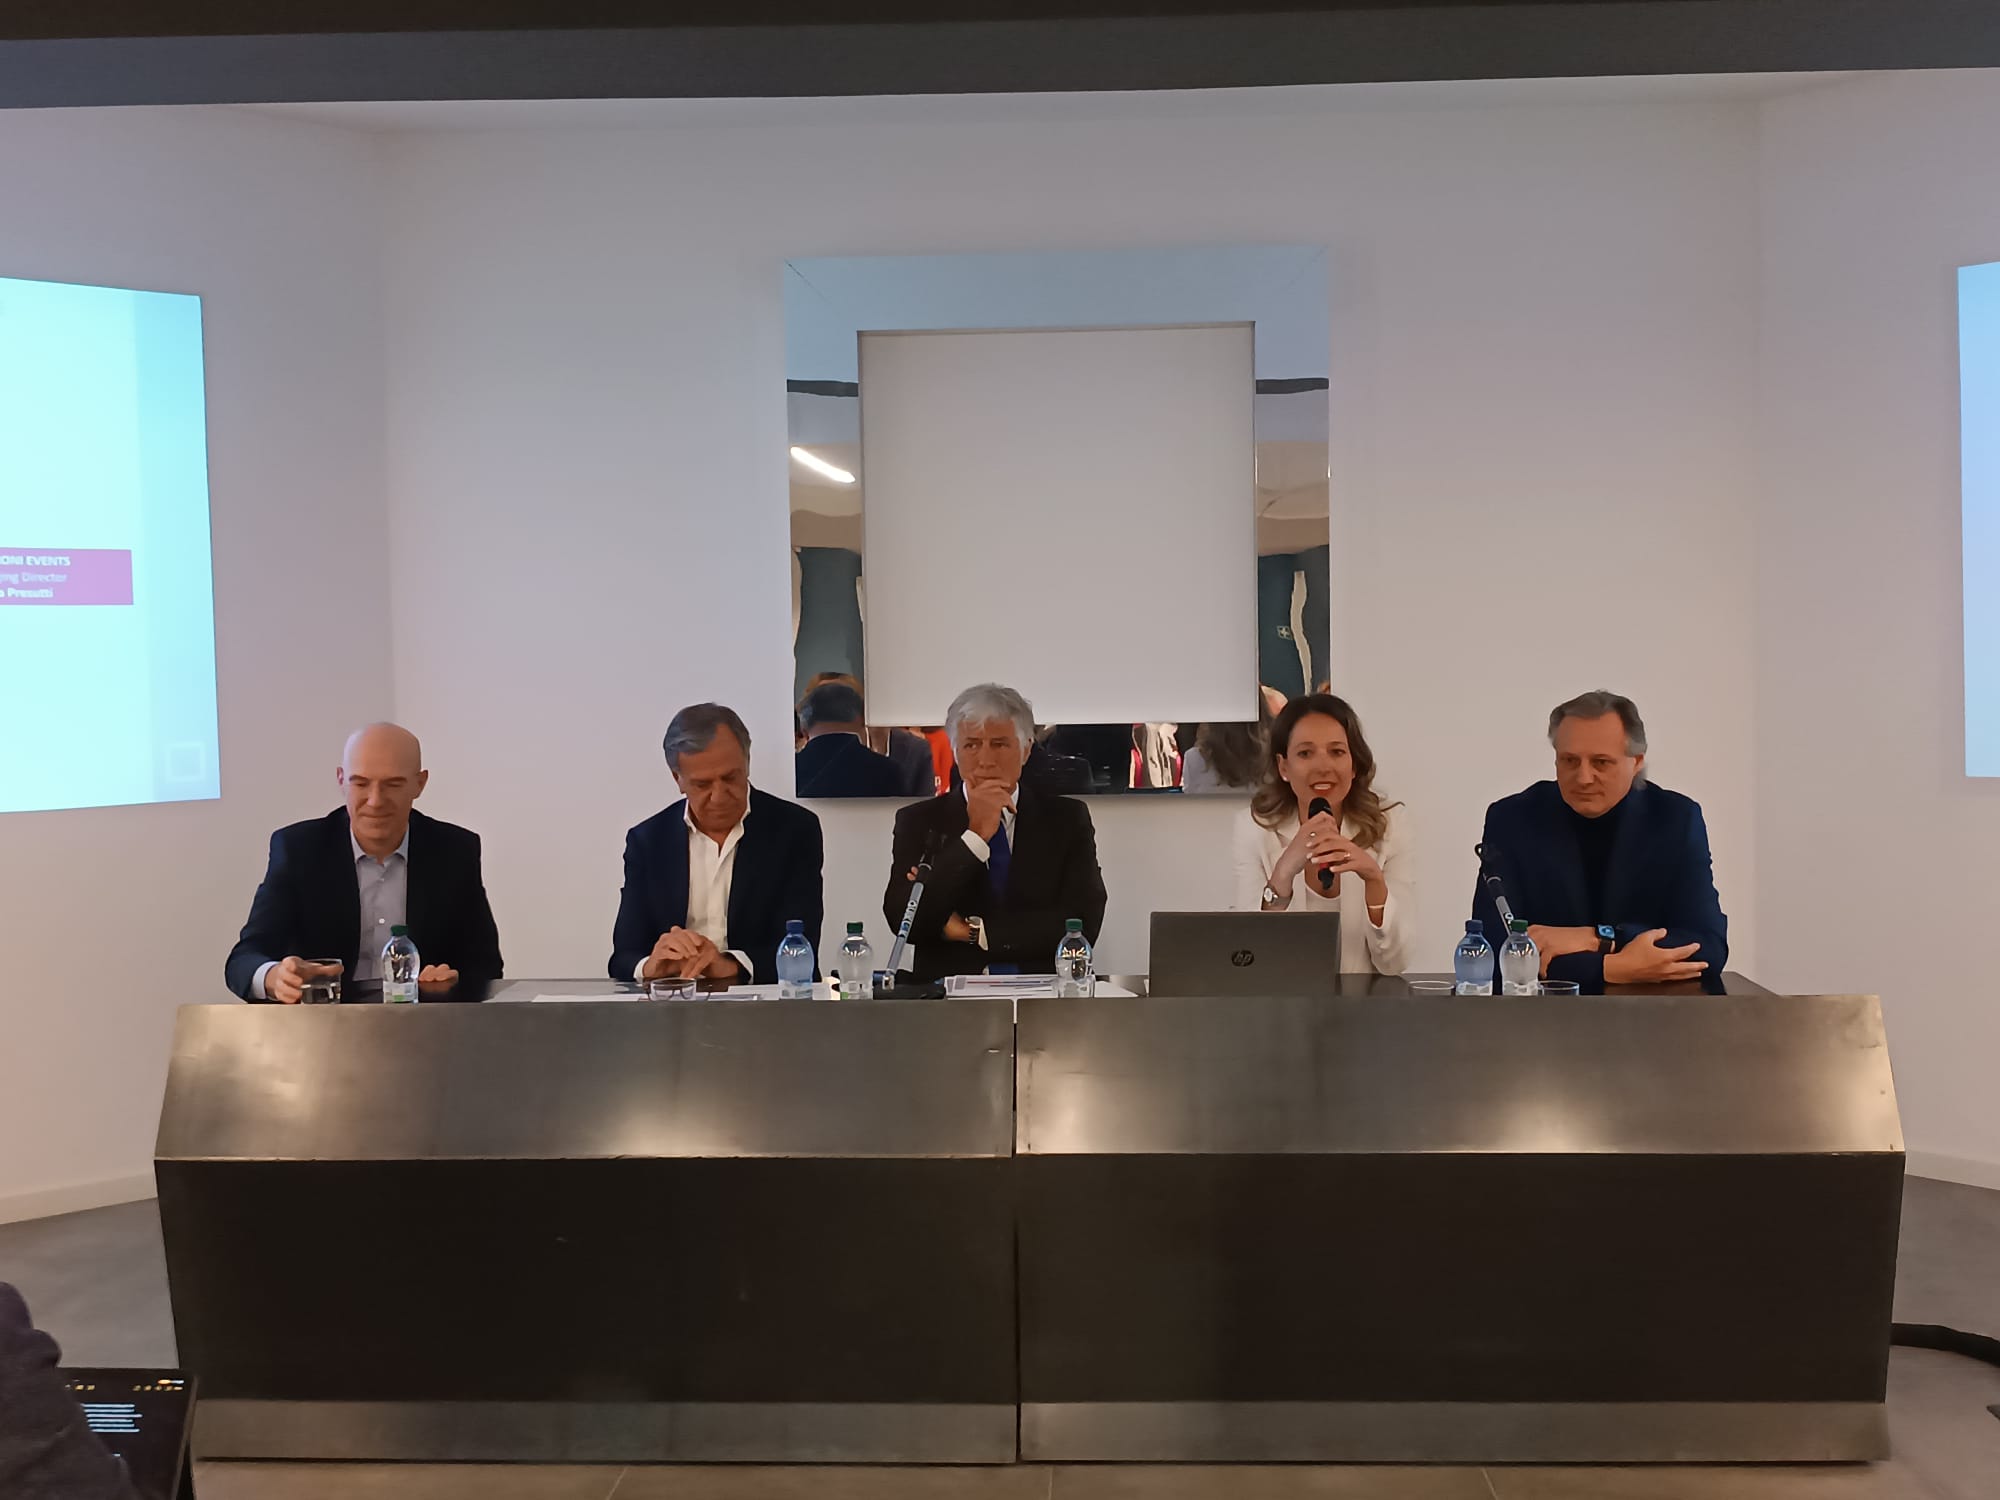 Il gruppo Gattinoni si divide in tre: alla guida Mario Vercesi, Piergiulio Donzelli ed Elisa Presutti